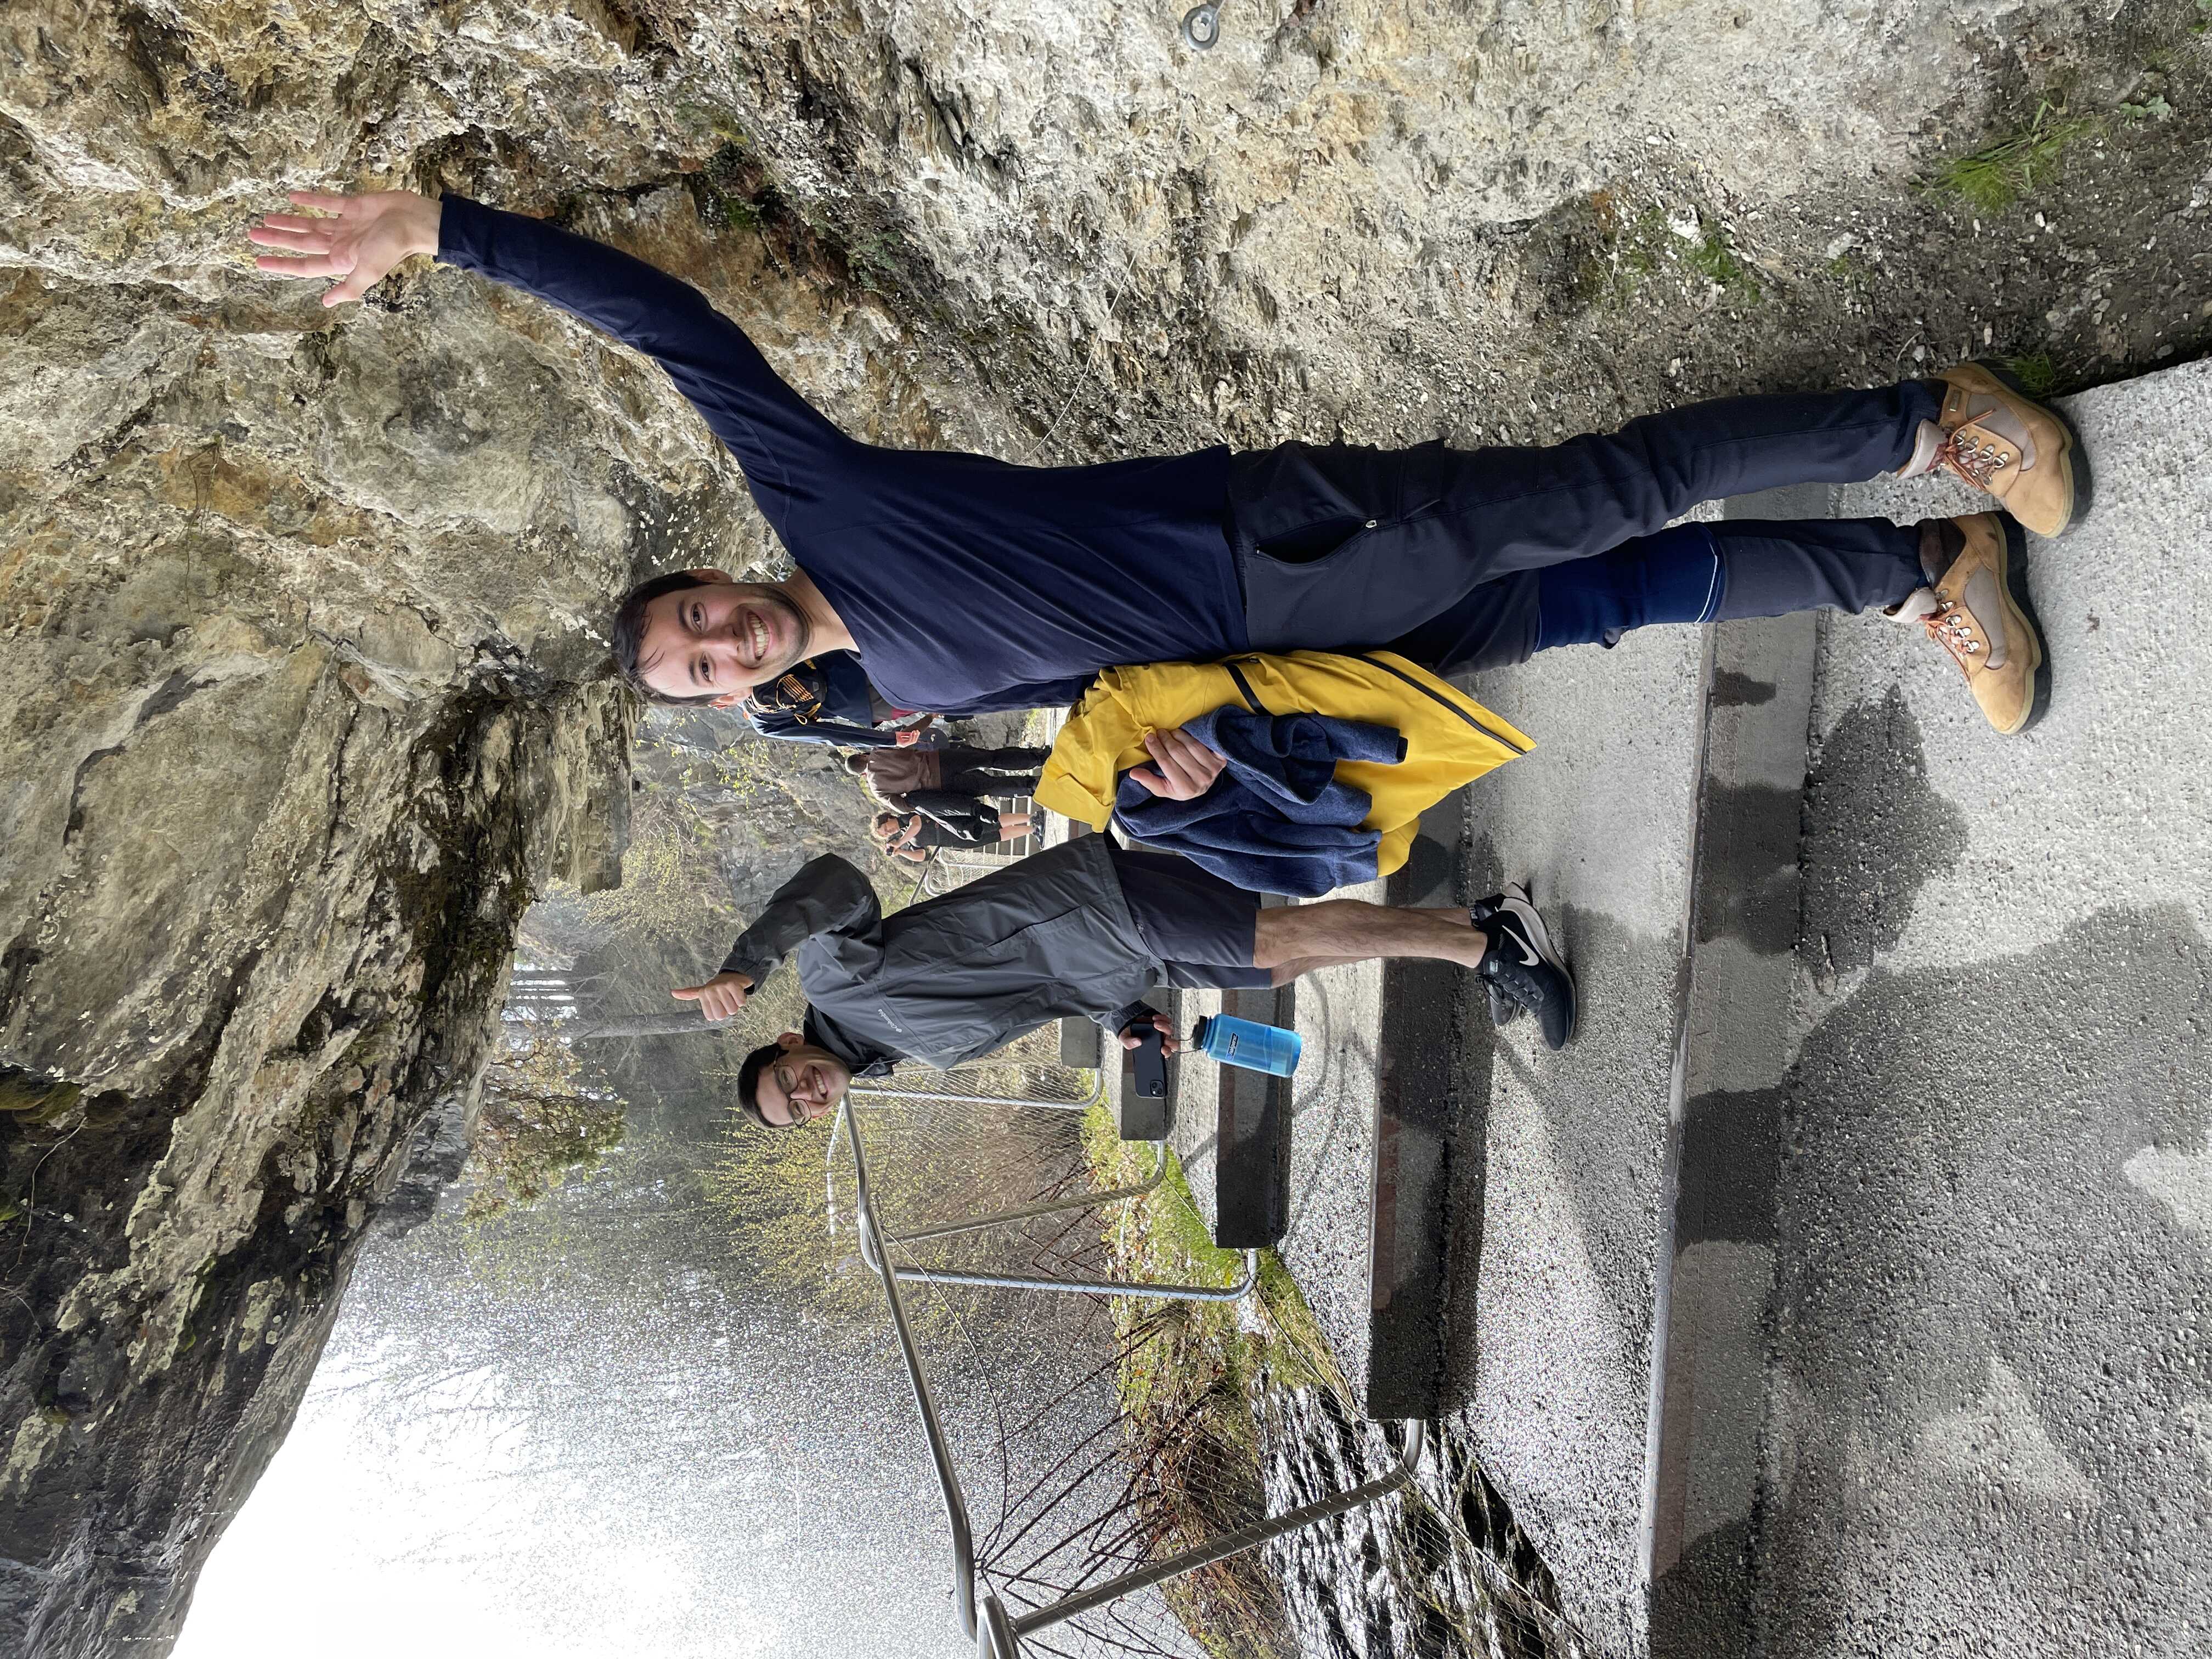 At the Steinsdalsfossen waterfall